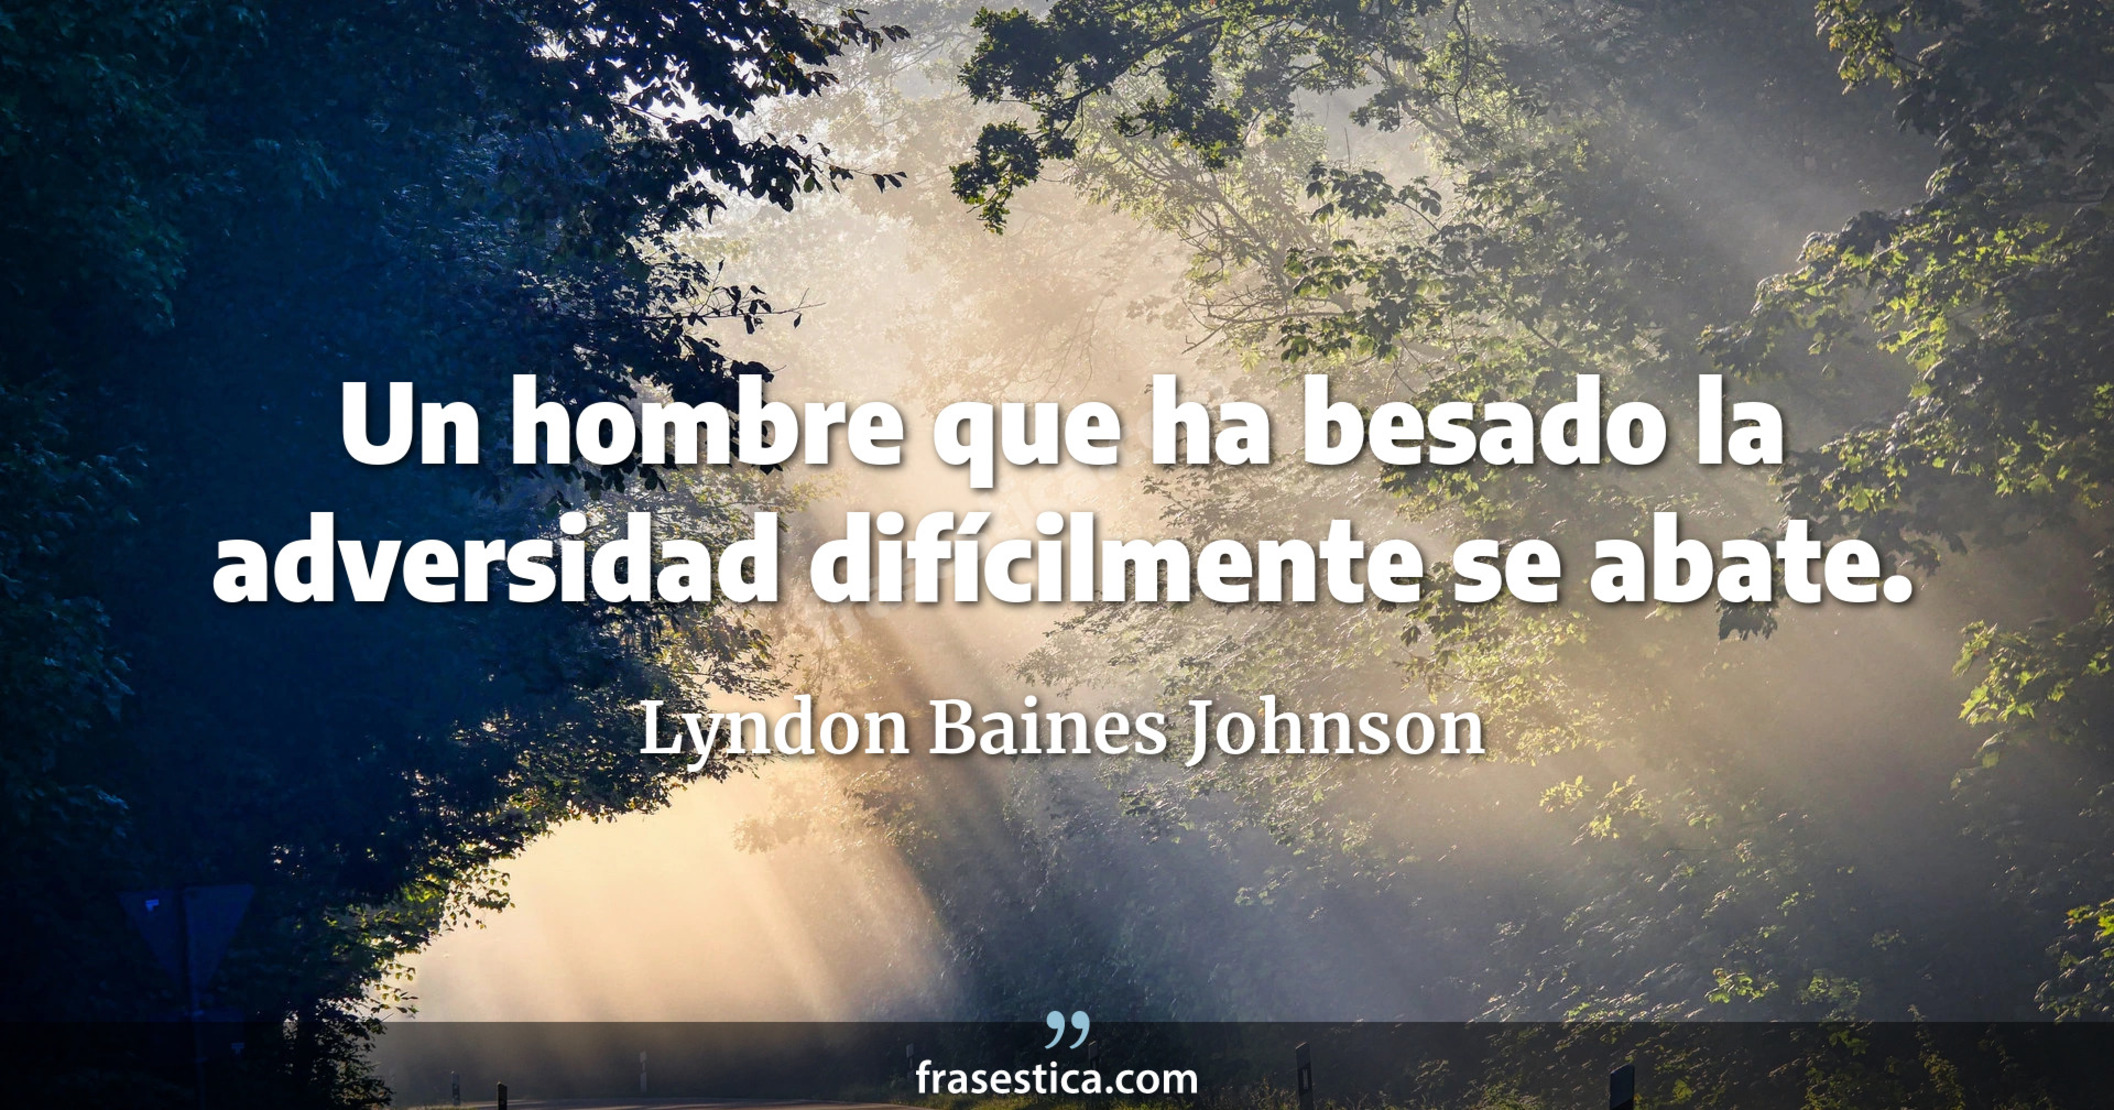 Un hombre que ha besado la adversidad difícilmente se abate. - Lyndon Baines Johnson